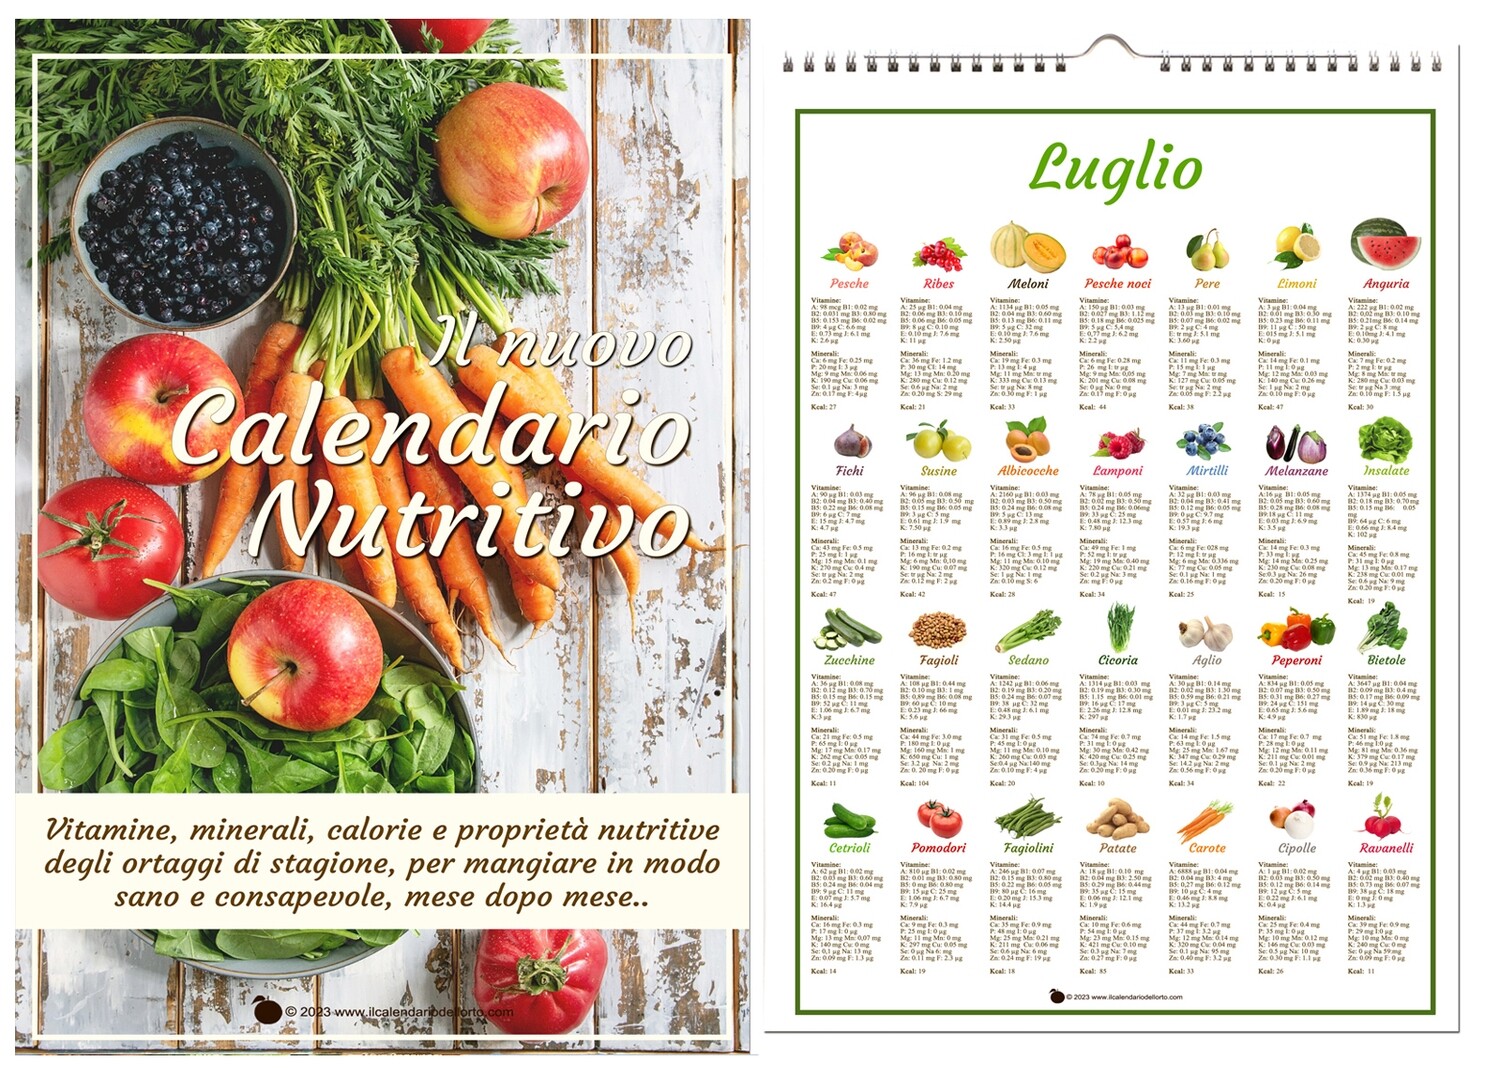 Il Nuovo Calendario Nutritivo